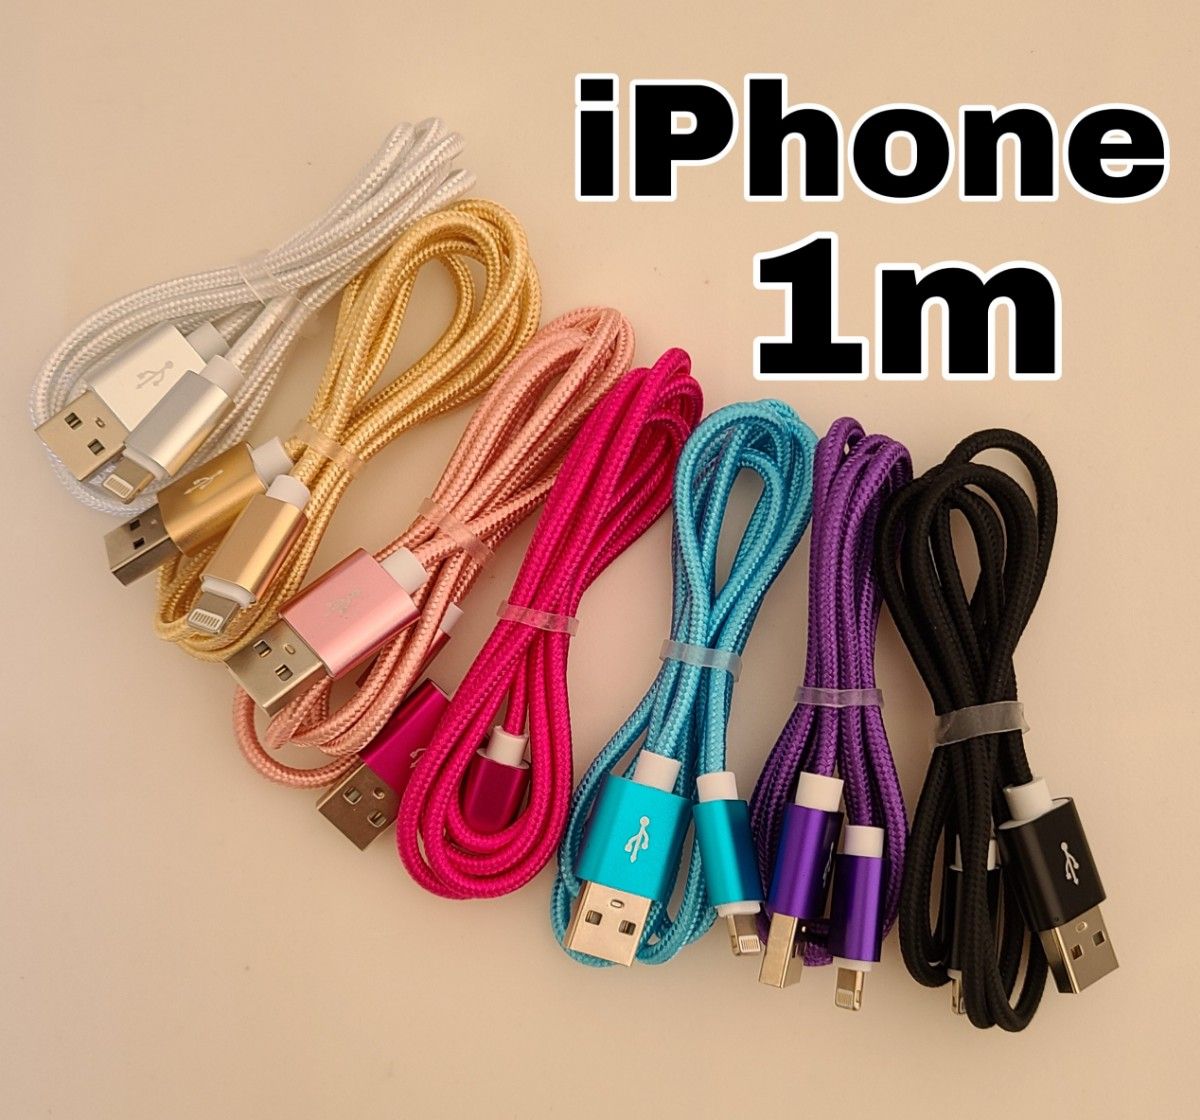 iPhone 1m 充電器 ライトニング ケーブル lightning cable USB 急速 充電 コード シルバー